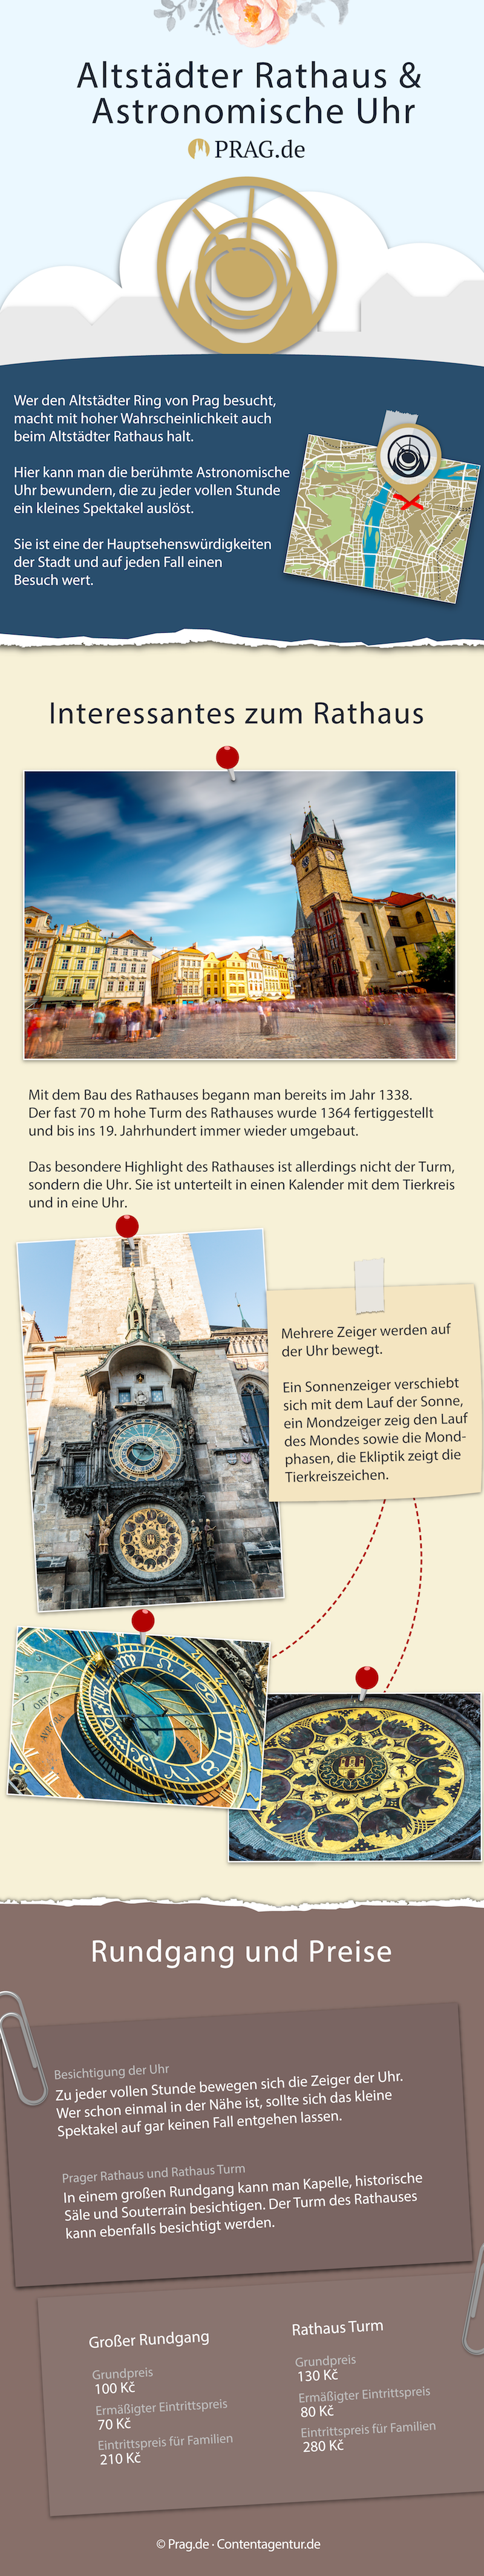 Rathaus und Astronomische Uhr in Prag